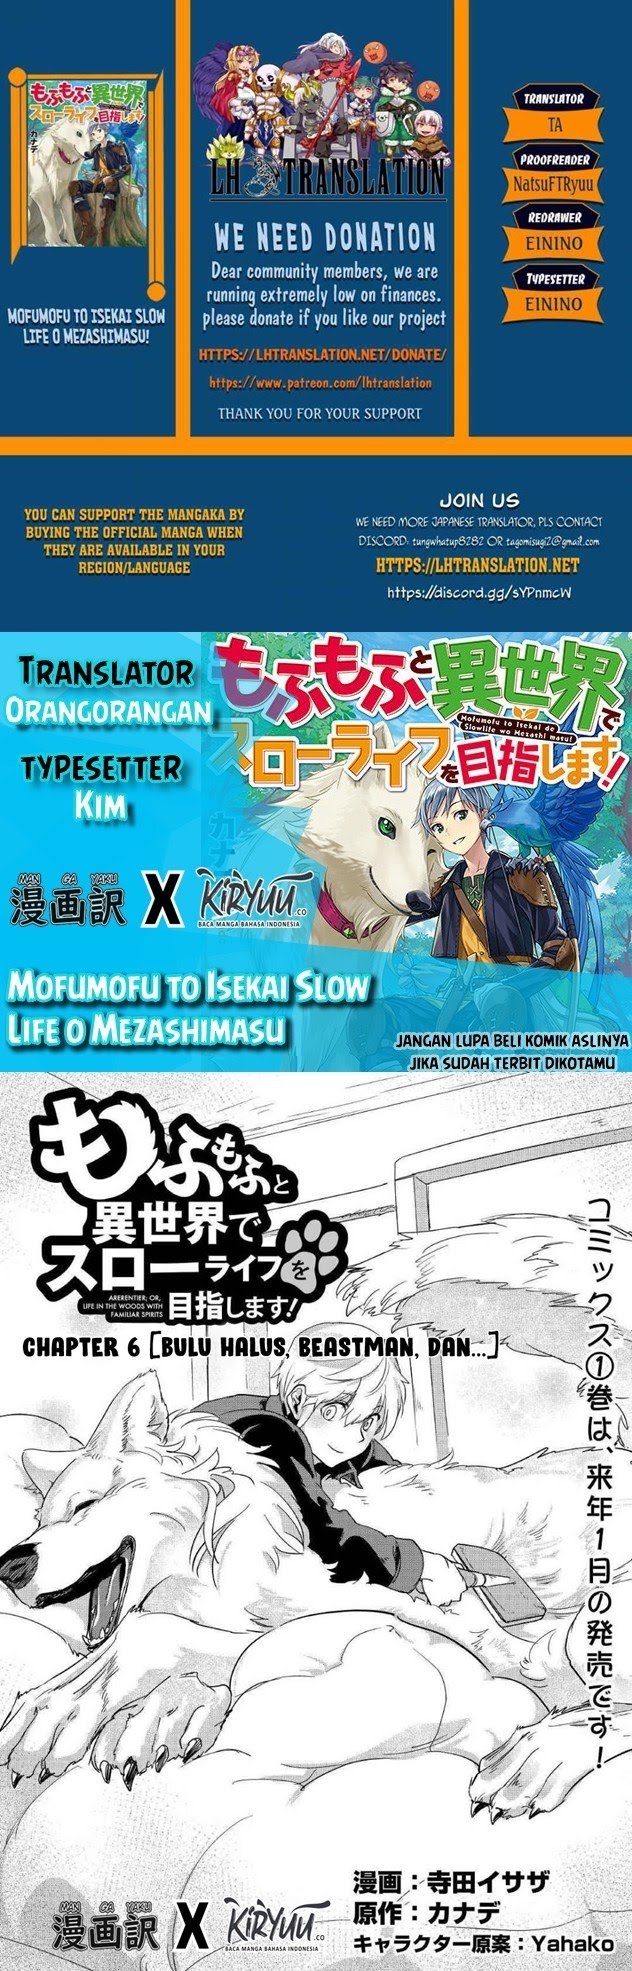 Mofumofu to Isekai Slow Life o Mezashimasu! Chapter 06